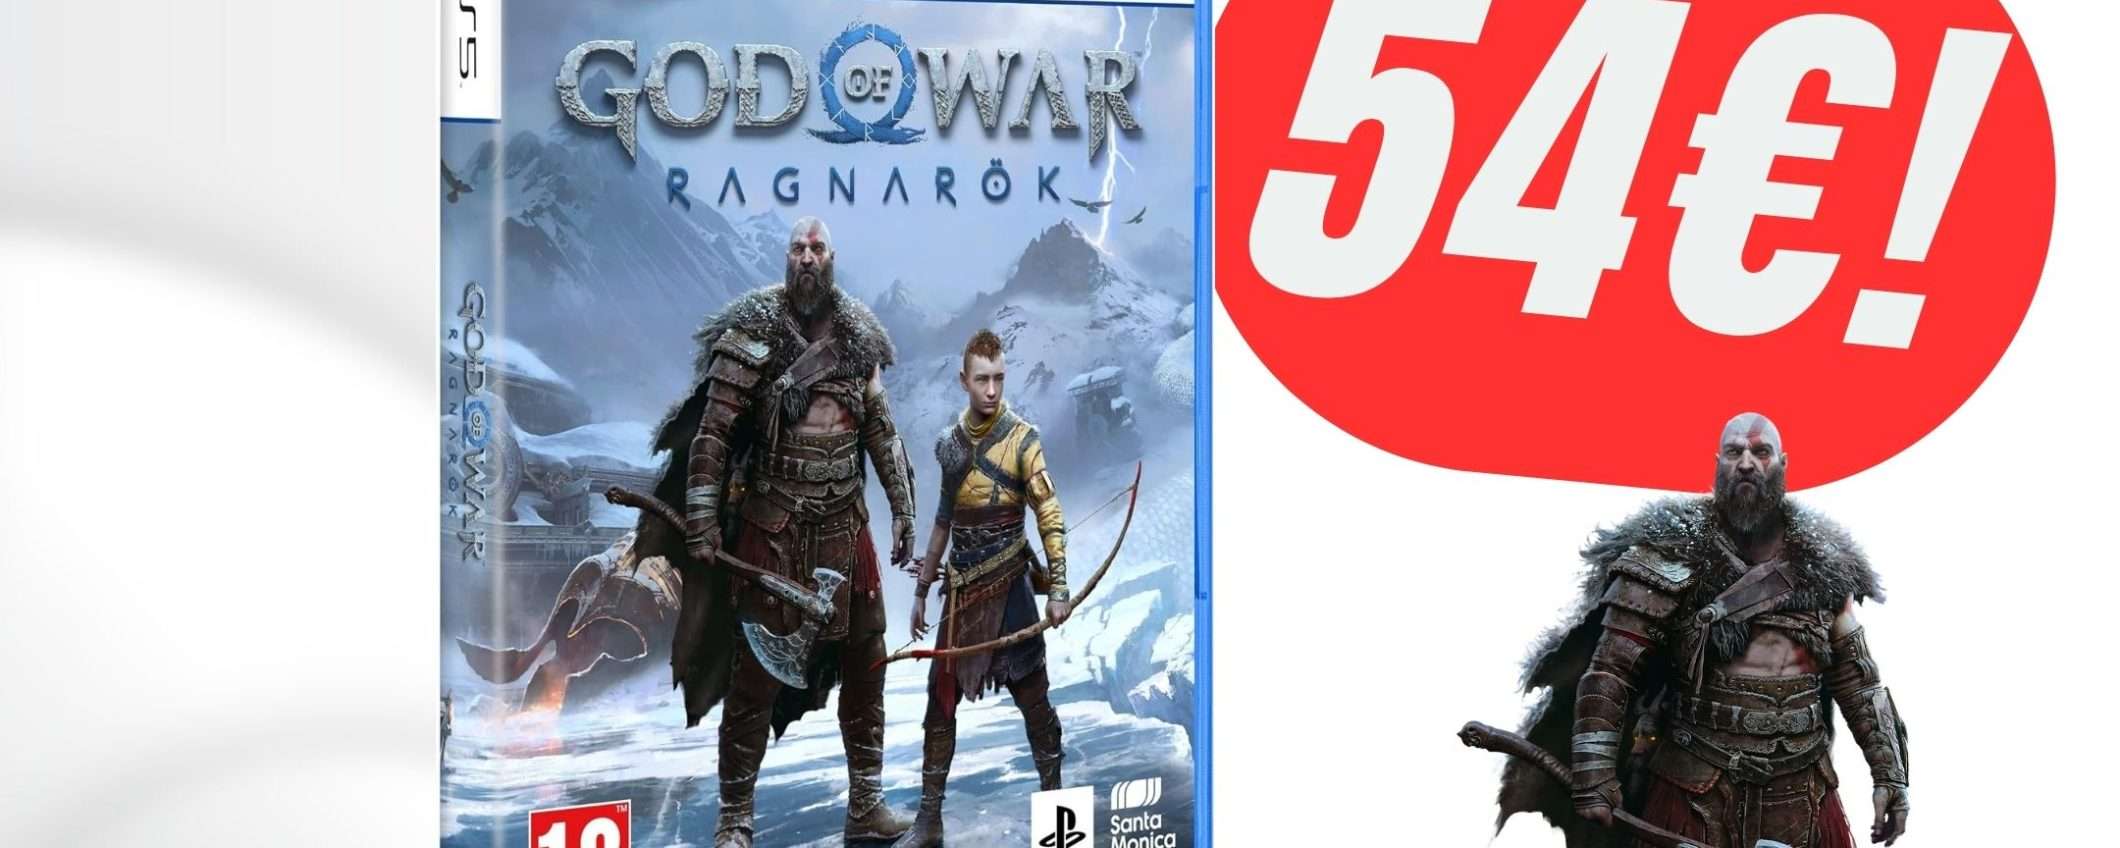 God of War: Ragnarok per PS5 a soli 54,95€ è da prendere SUBITO!